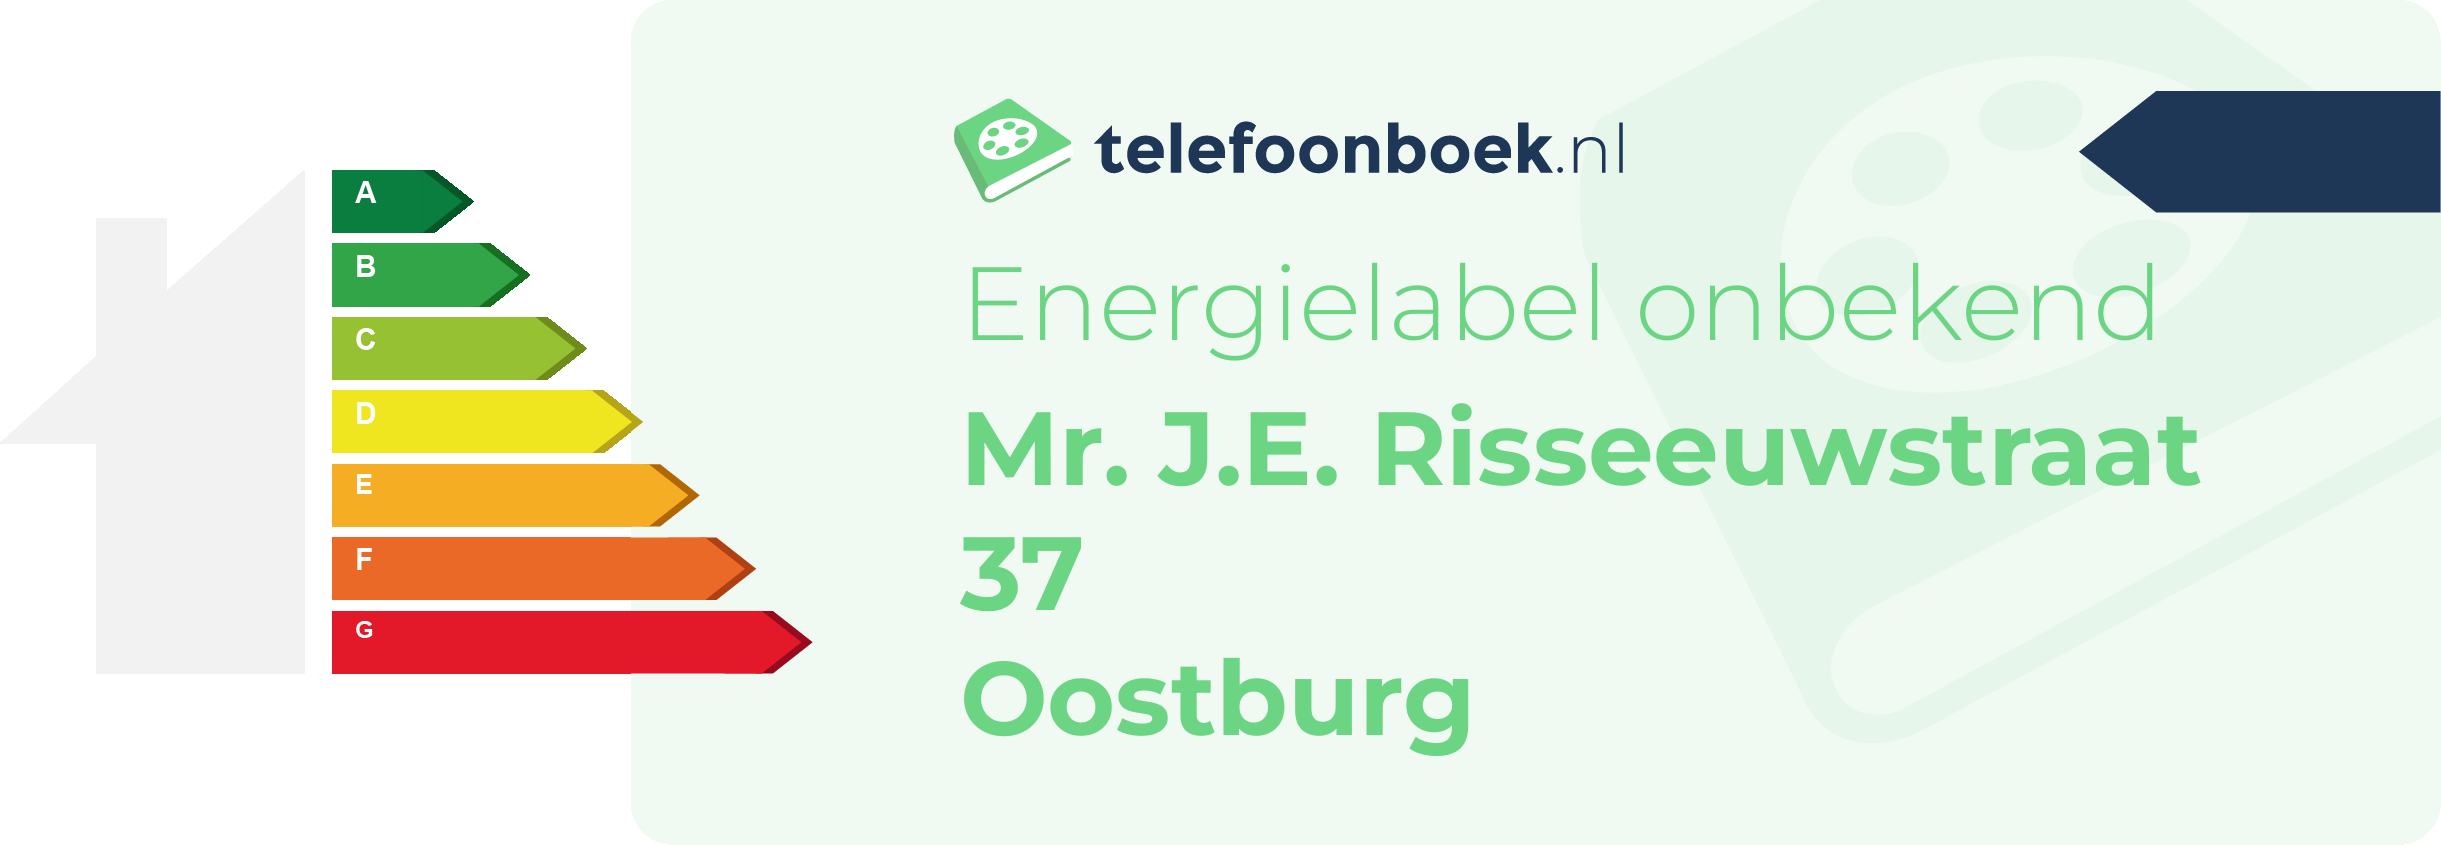 Energielabel Mr. J.E. Risseeuwstraat 37 Oostburg